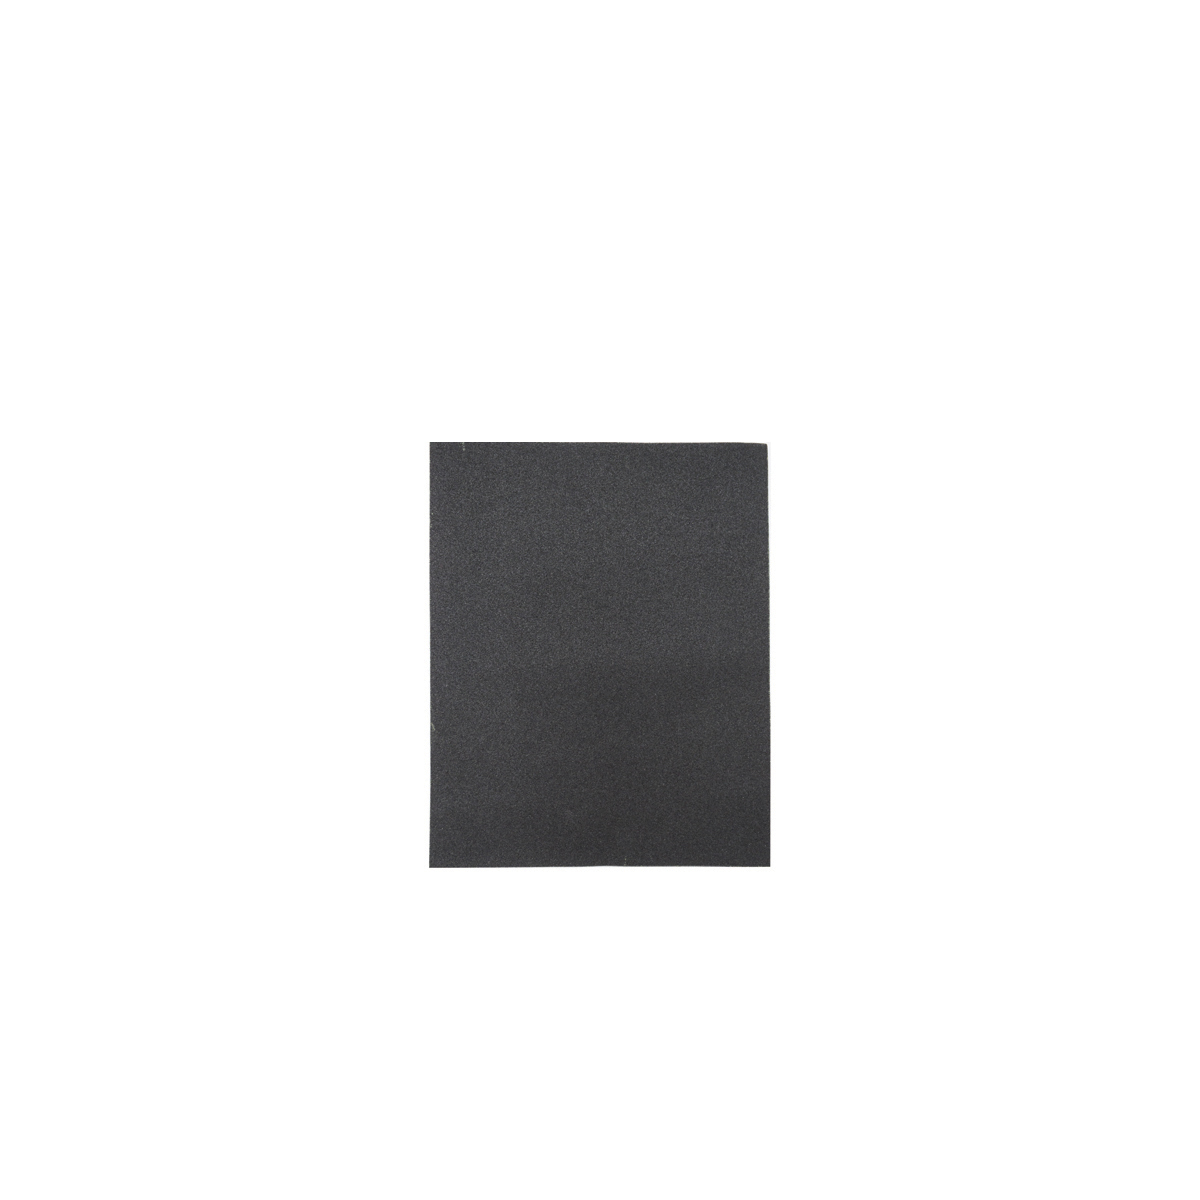 Лист шлифовальный Кедр, P 1500, 230 x 280 мм, водостойкий,   бумага, 10 шт